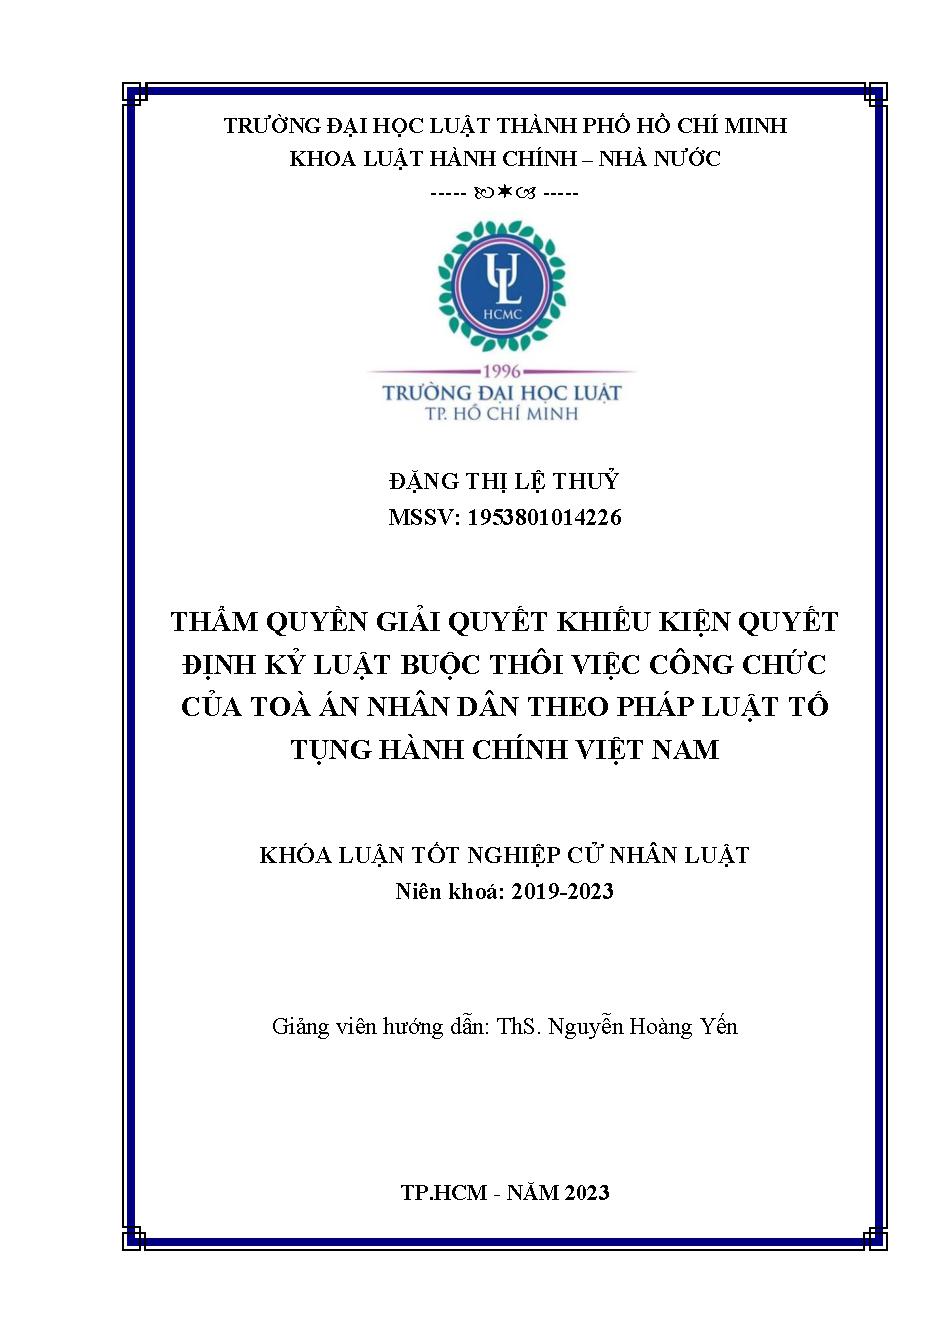 Thẩm quyền giải quyết khiếu kiện quyết định kỷ luật buộc thôi việc công chức của Tòa án nhân dân theo pháp luật tố tụng hành chính Việt Nam